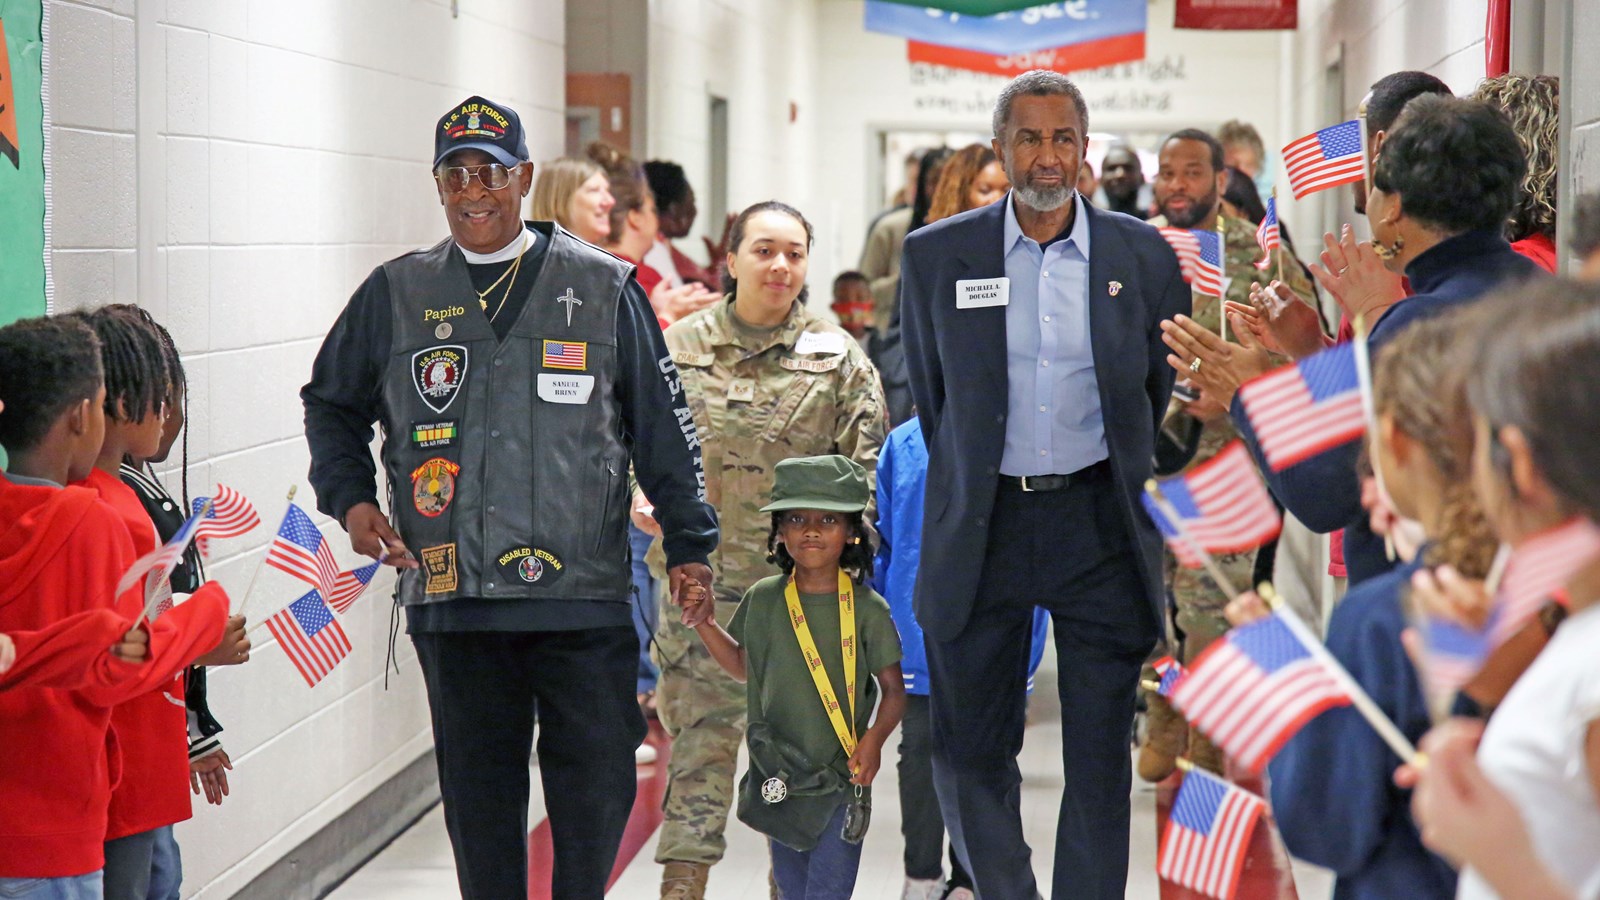 Still Elementary honors veterans